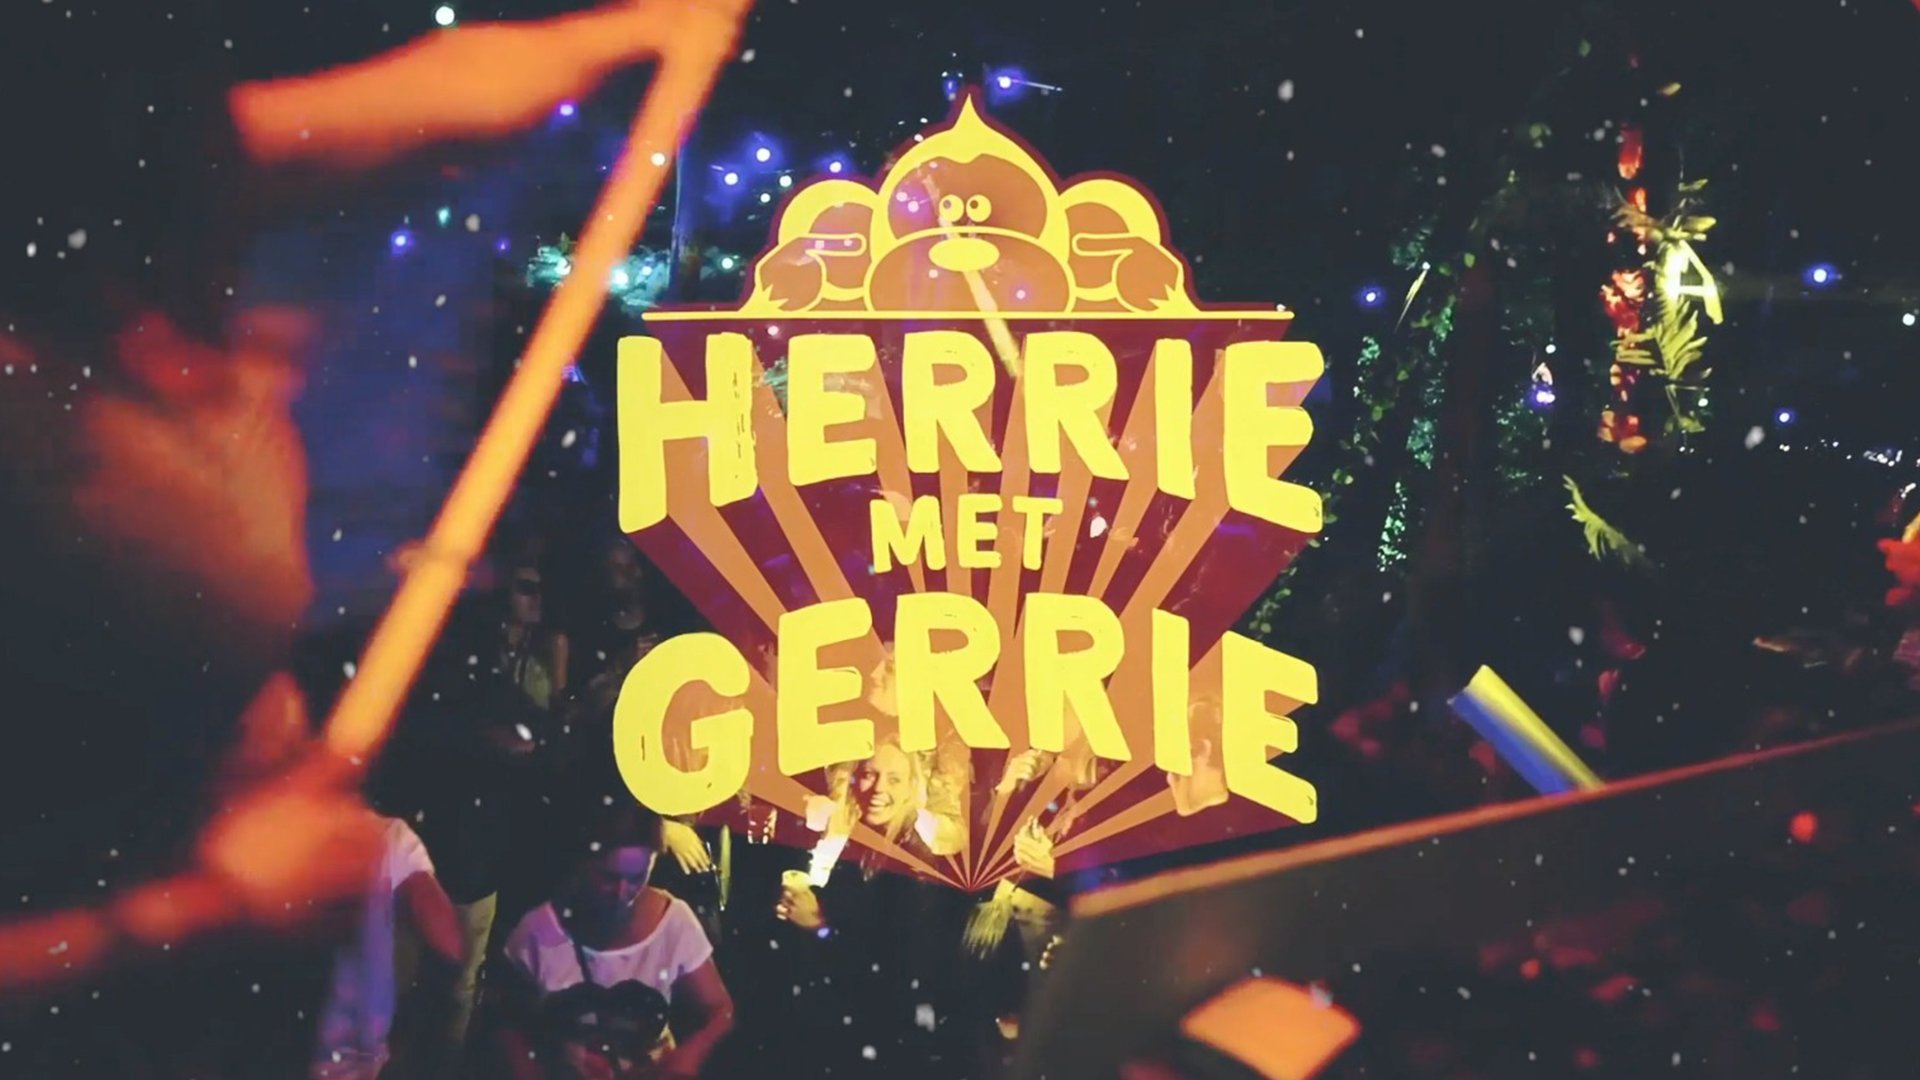 HERRiE MET GERRiE